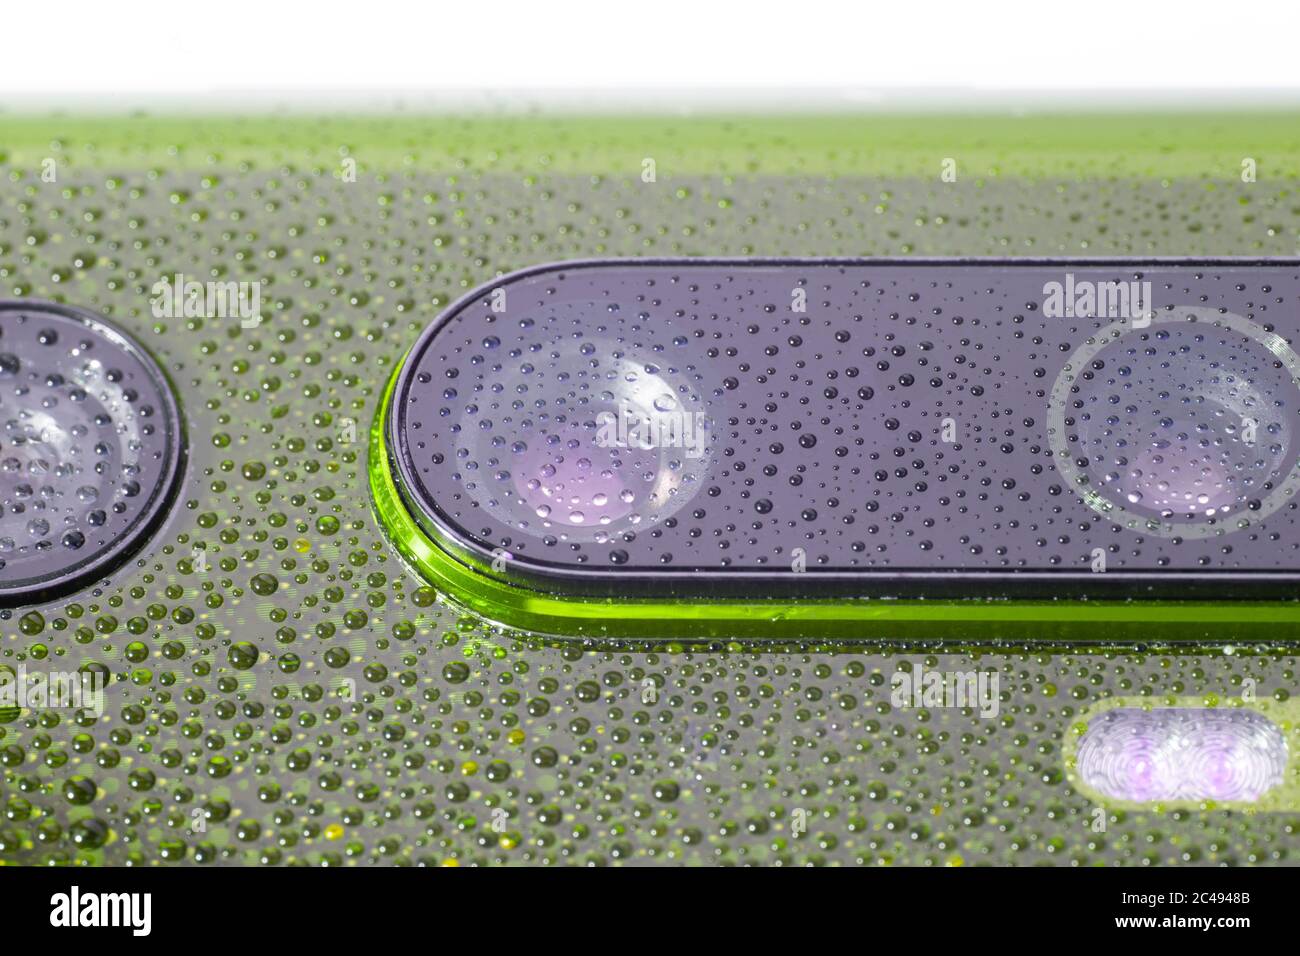 obiettivo verde della fotocamera del telefono coperto da piccole gocce d'acqua - primo piano con messa a fuoco e sfocatura selettive Foto Stock